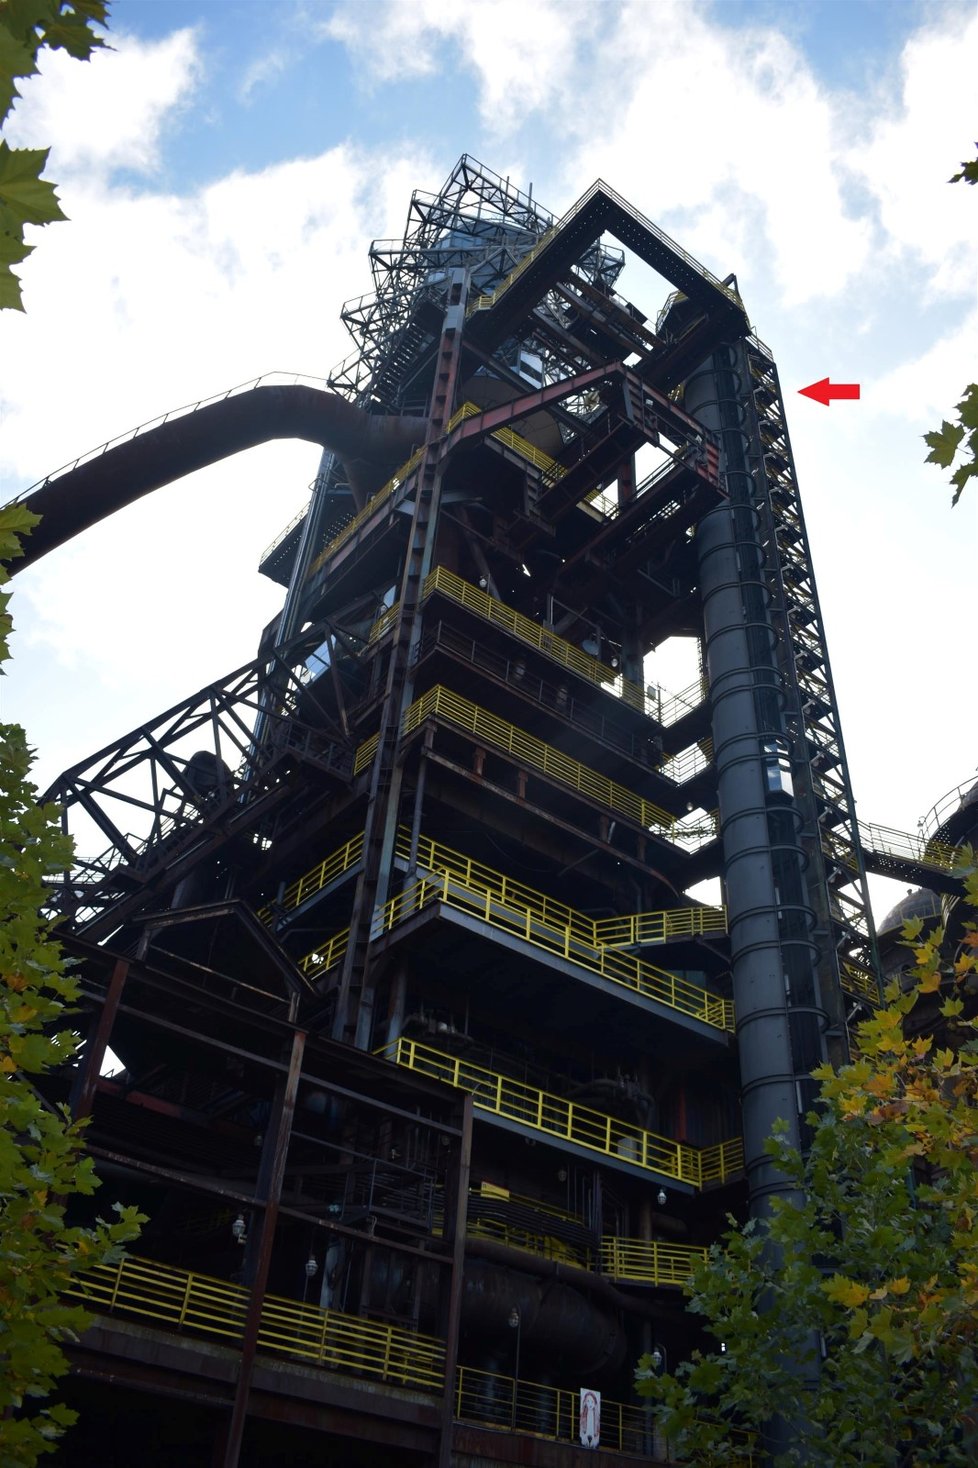 Schodiště slávy vede k vyhlídce Bolt Tower na železárenské vysoké peci.